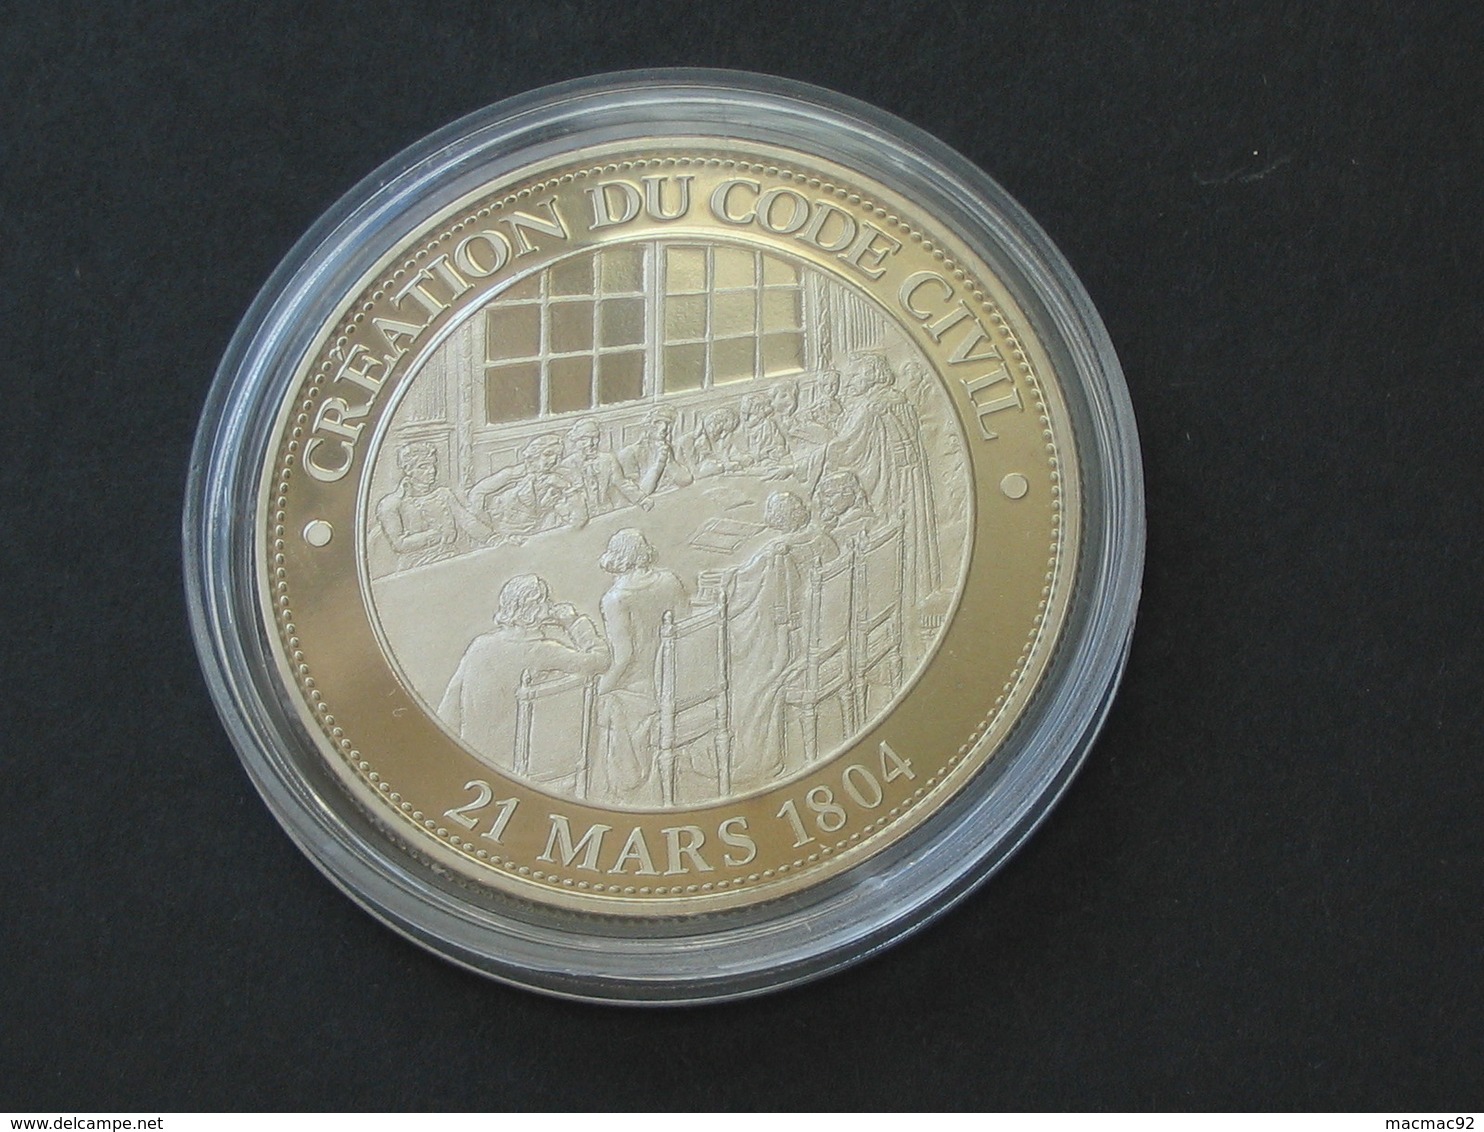 Médaille  NAPOLEON  BONAPARTE - Création Du Code Civil - 21 Mars 1804  **** EN ACHAT IMMEDIAT **** - Royaux / De Noblesse